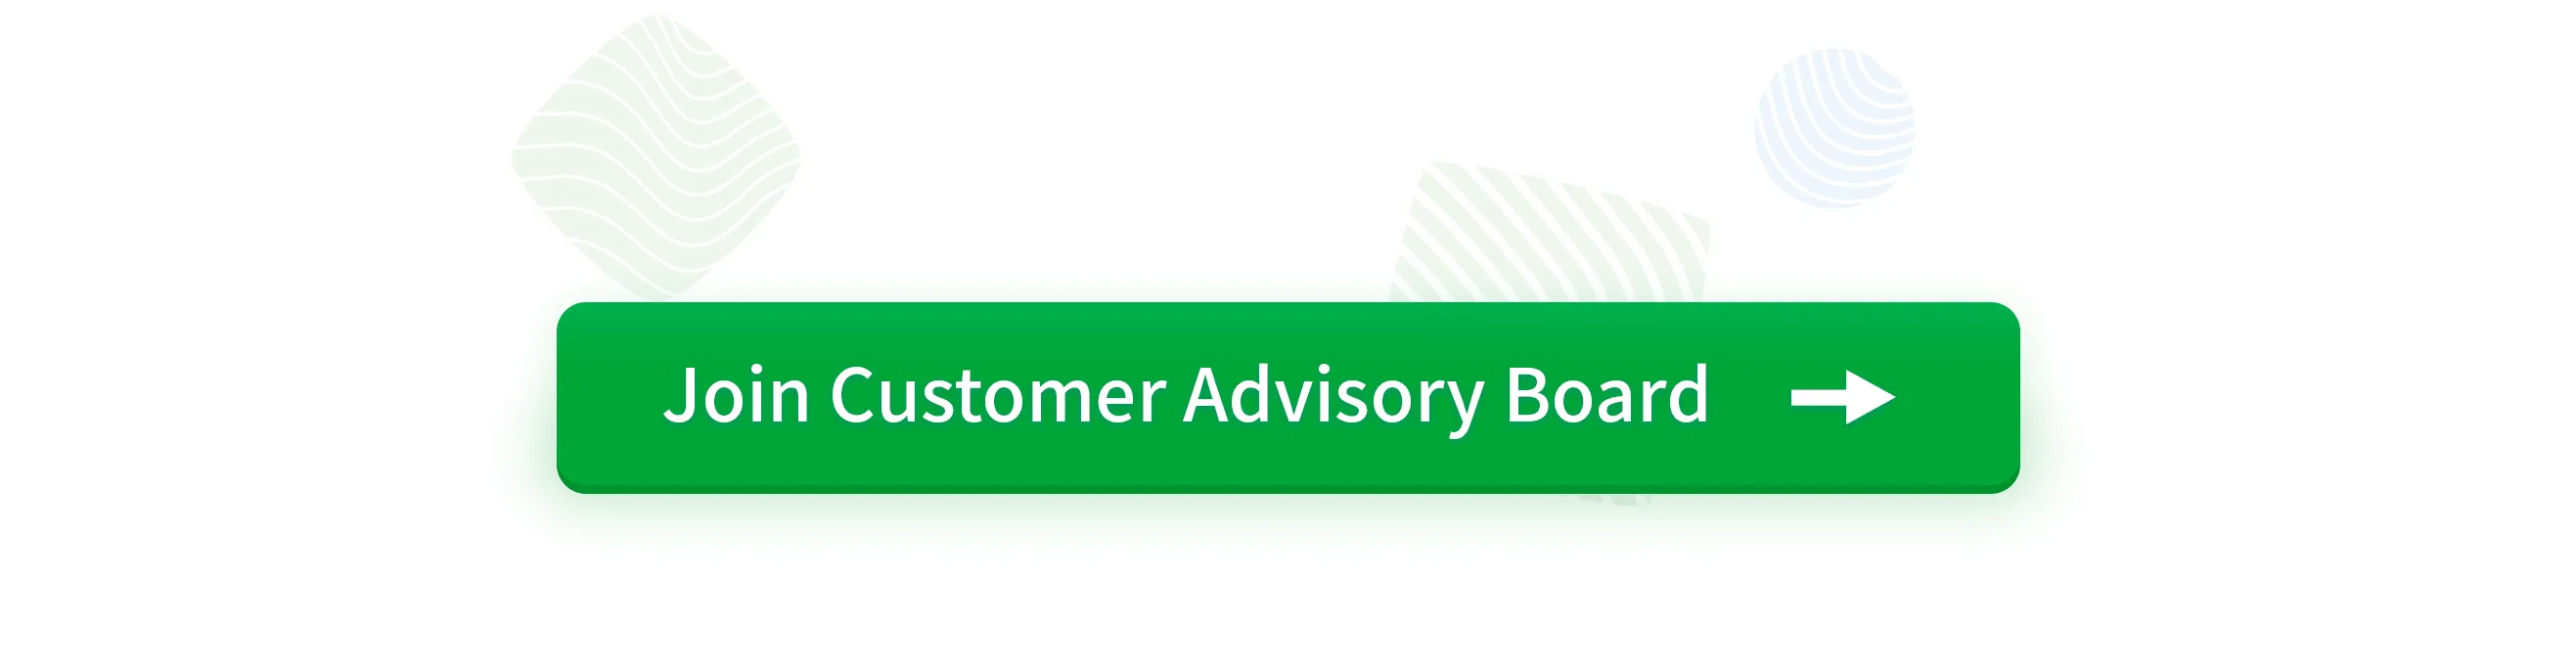 join customer advisory board